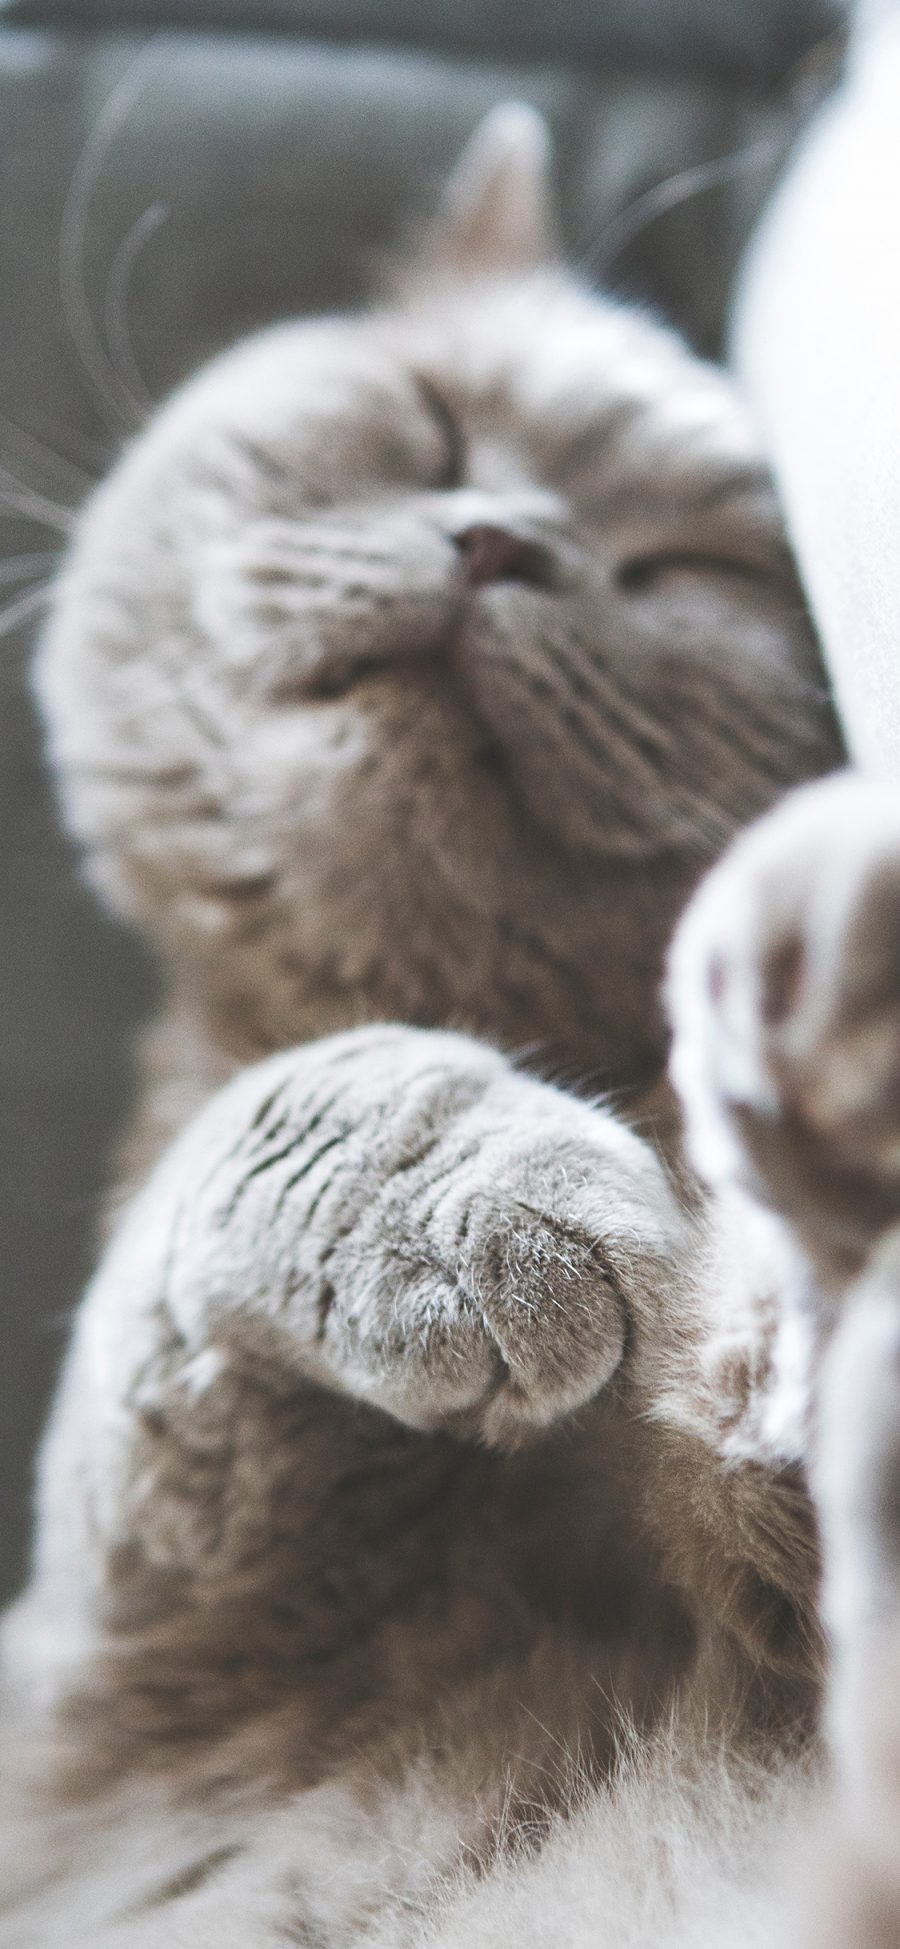 [2436×1125]喵星人 宠物猫 睡觉 苹果手机壁纸图片